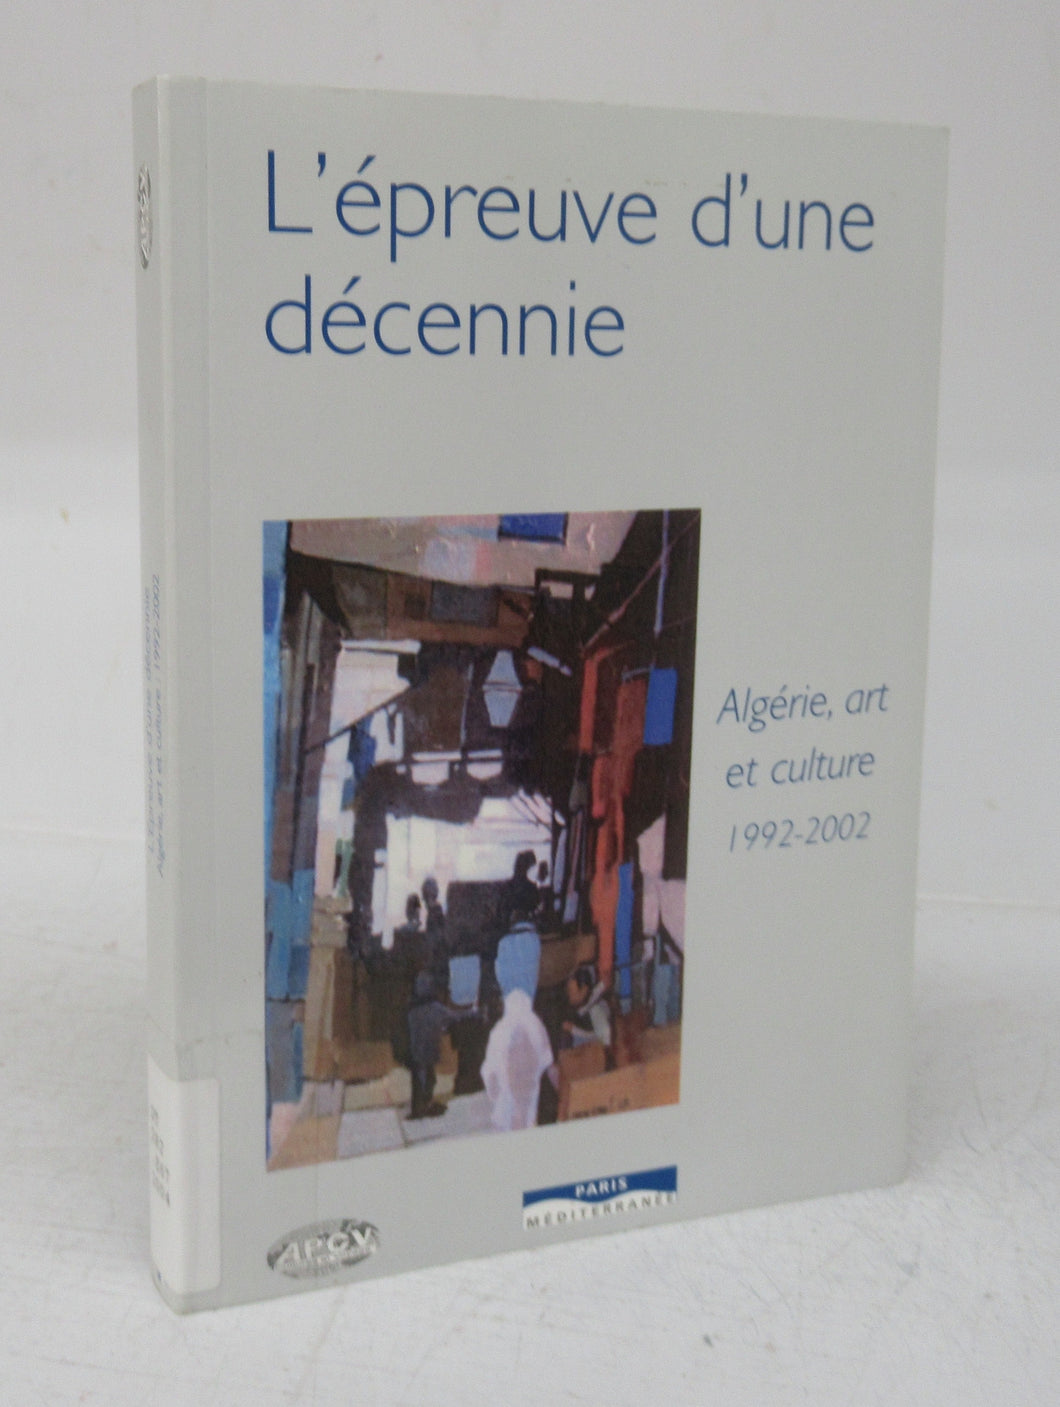 L'Epreuve d'une Decennie: Algerie, art et culture 1992-2002